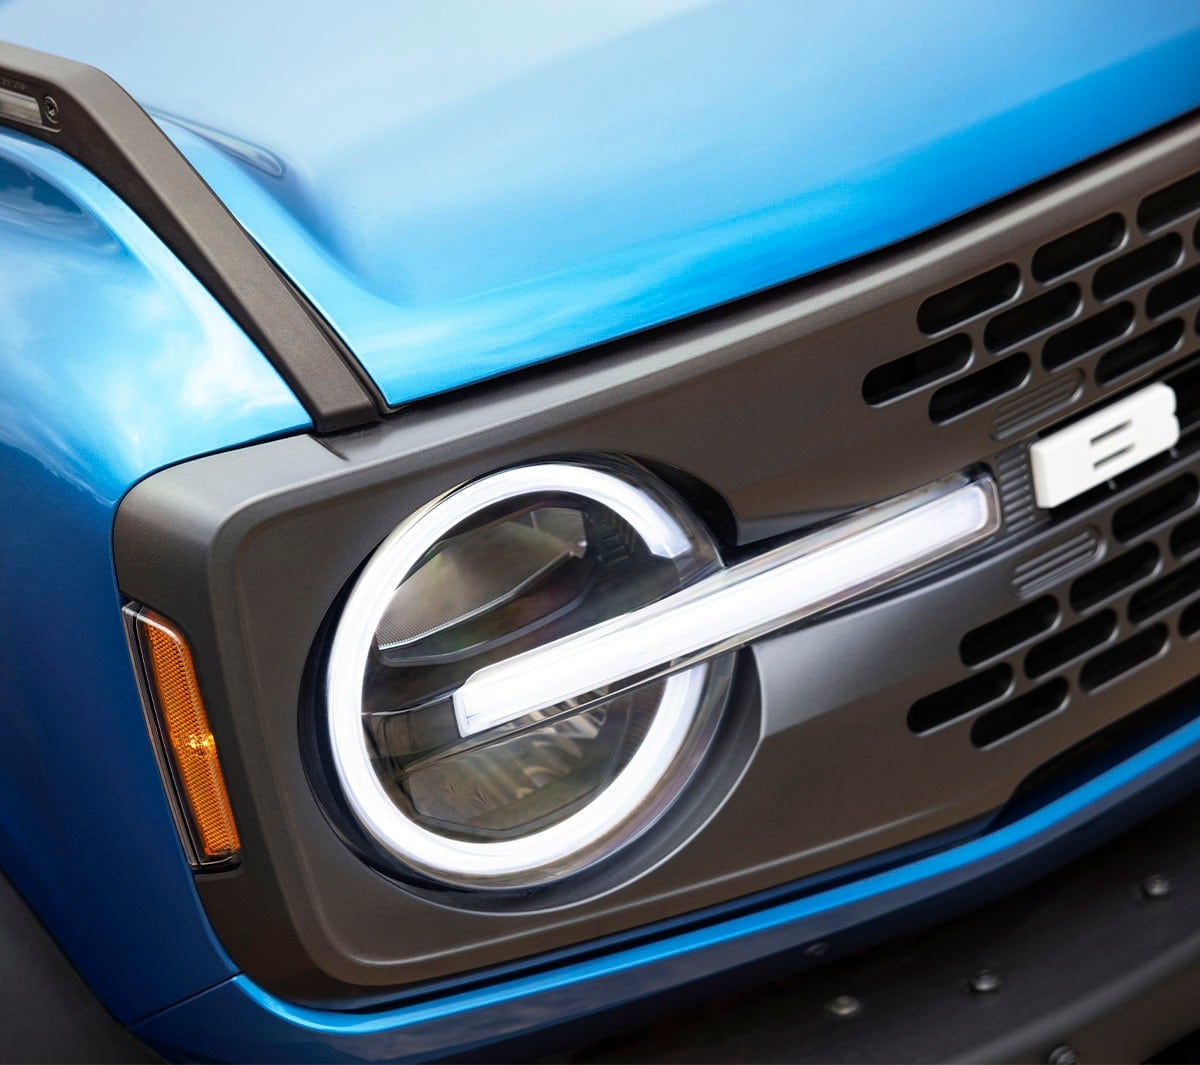 Ford Bronco in Blau. Detailansicht der Frontpartie und der Scheinwerfer